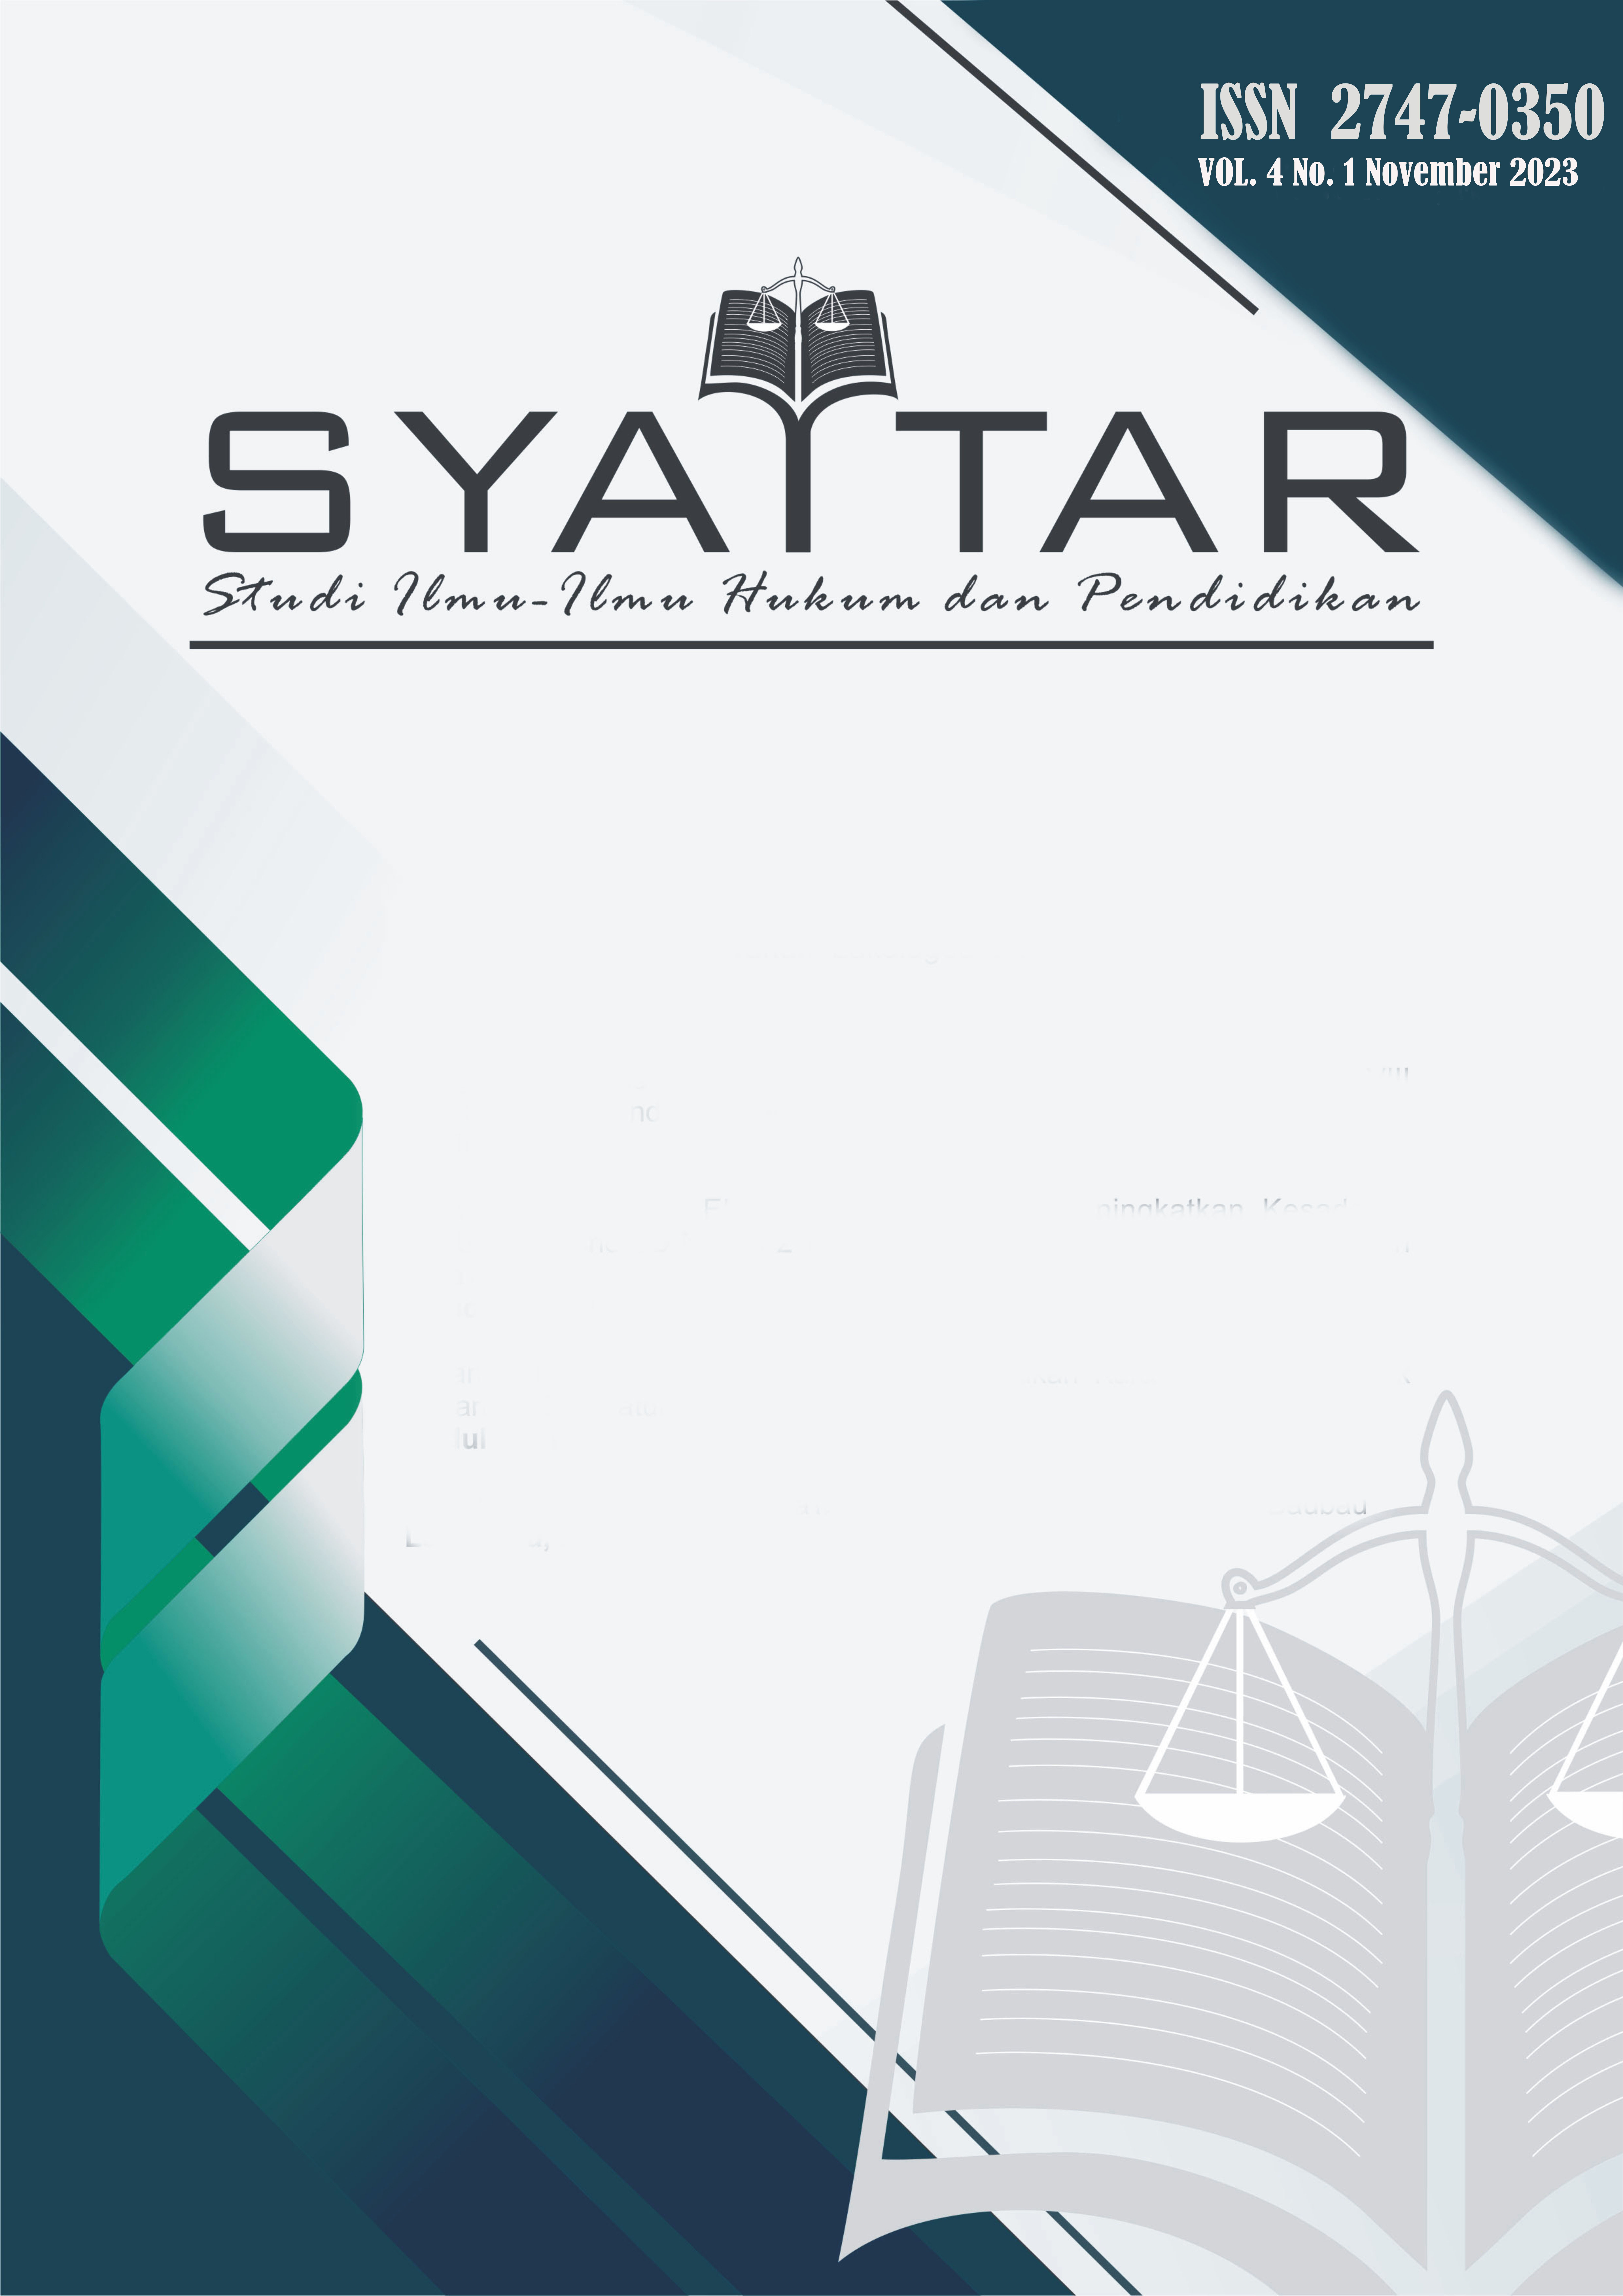 SYATTAR: Jurnal Ilmu-Ilmu Hukum dan Pendidikan